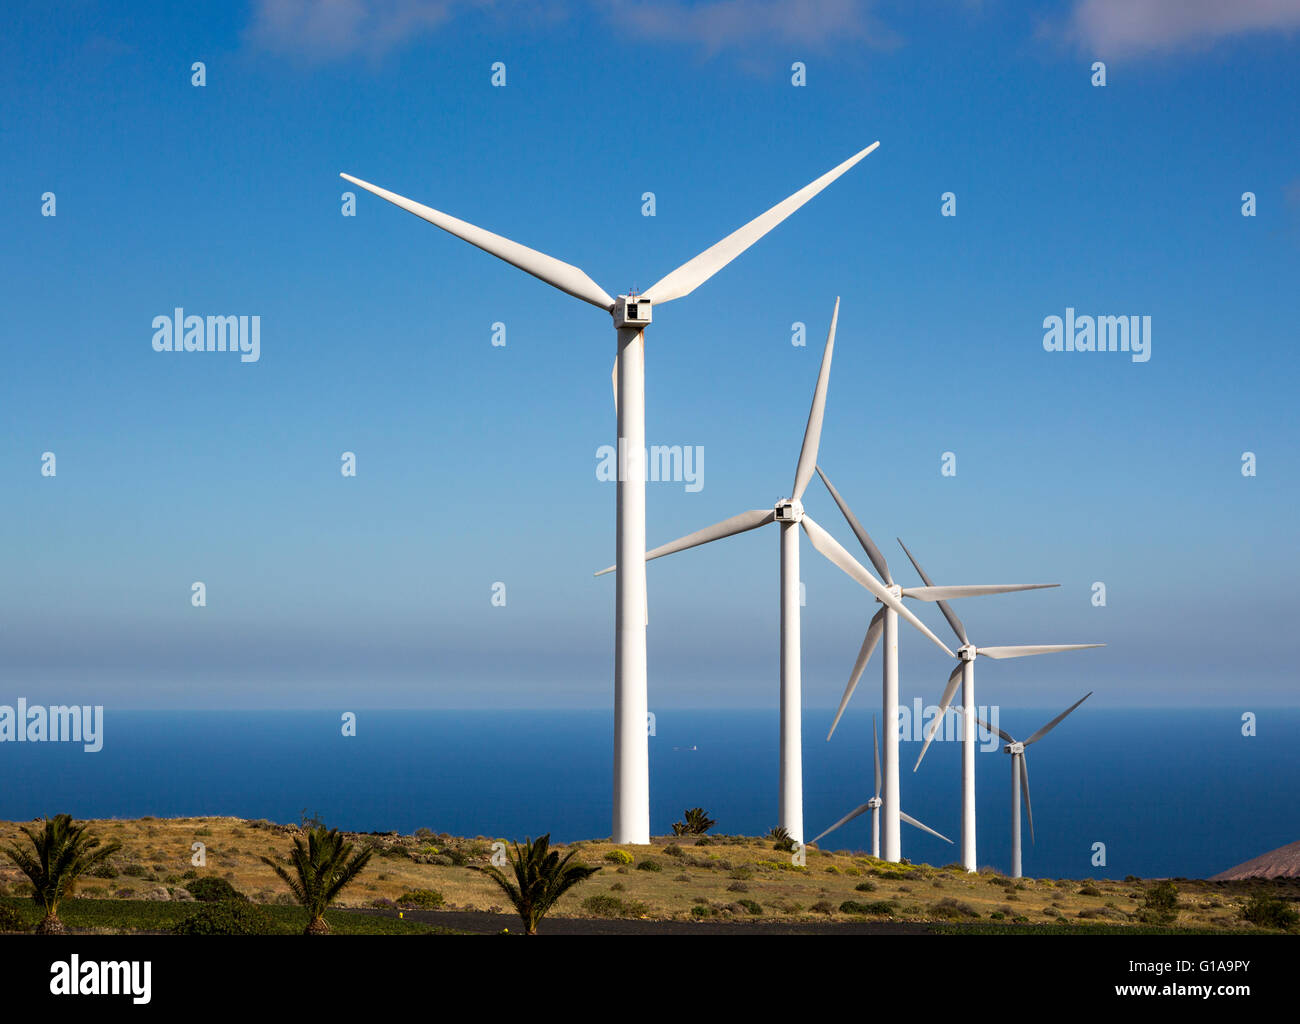 Turbines at Eolicas de Lanzarote wind farm, Lanzarote, Canary Islands, Spain Stock Photo